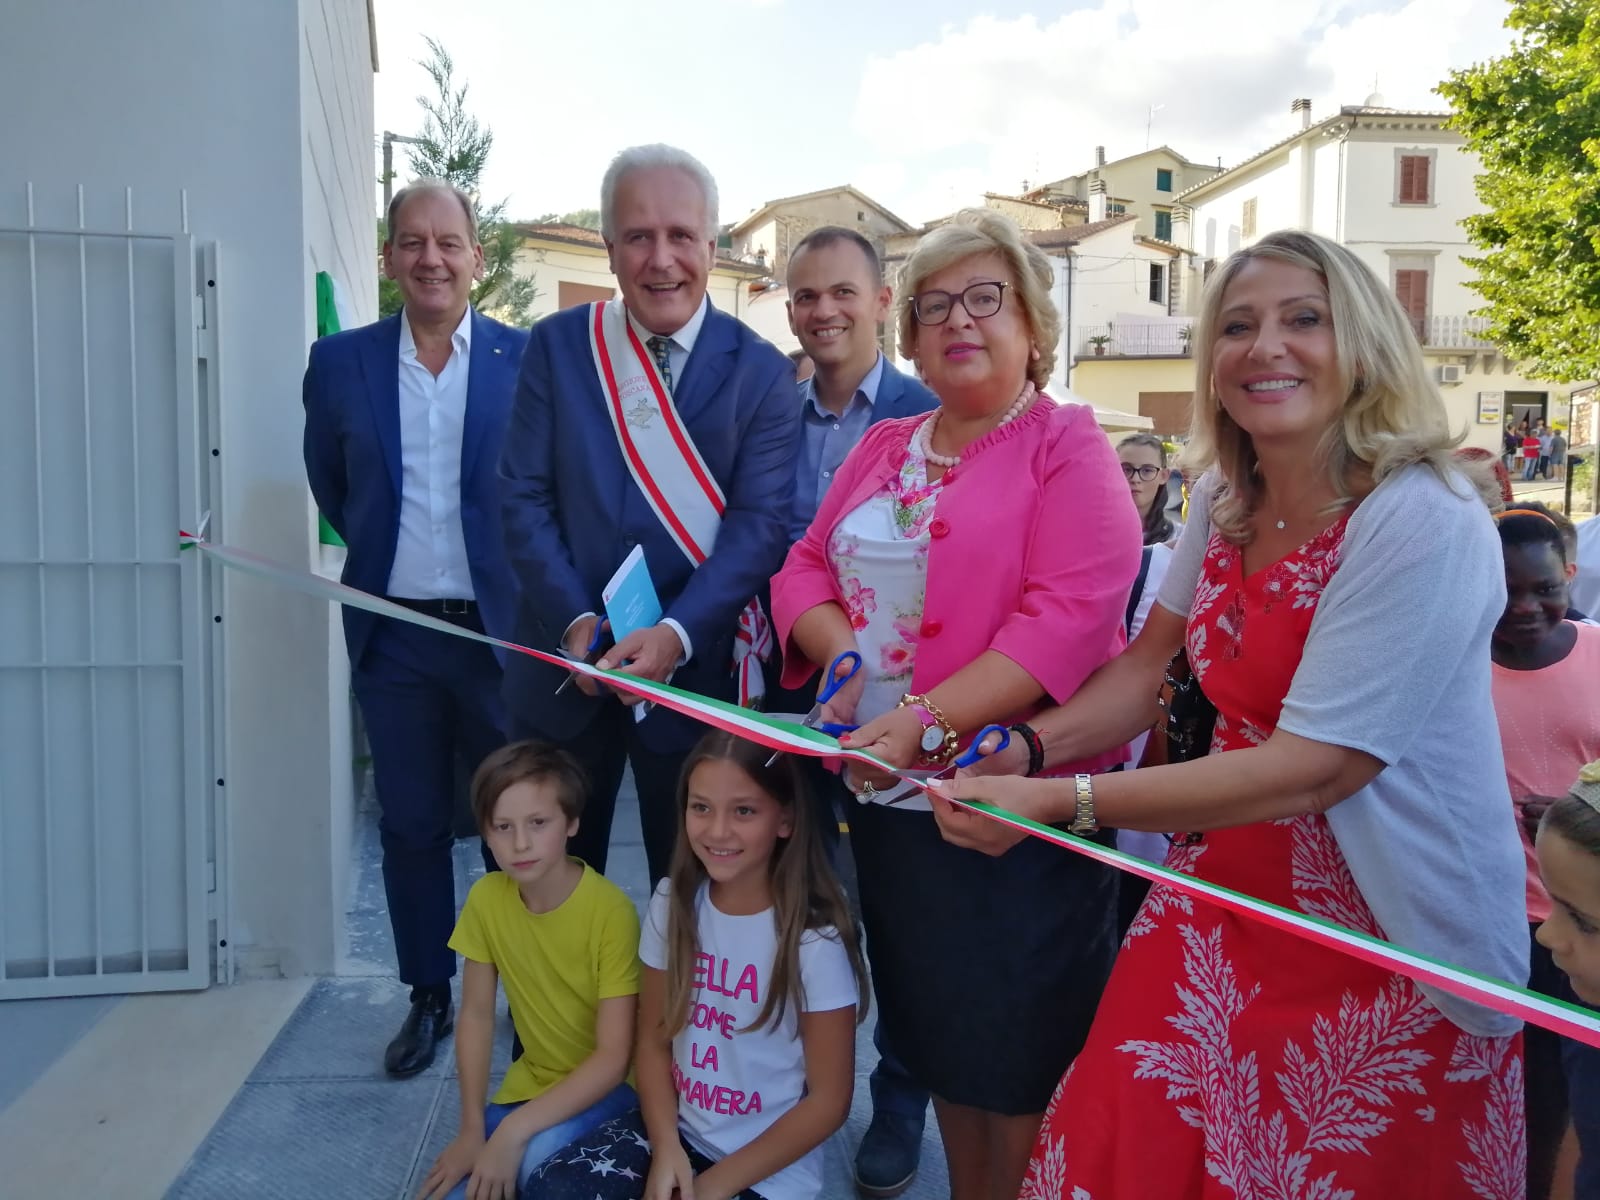 Immagine L'assessore Grieco inaugura la scuola primaria Romiti a Montagnana Pistoiese